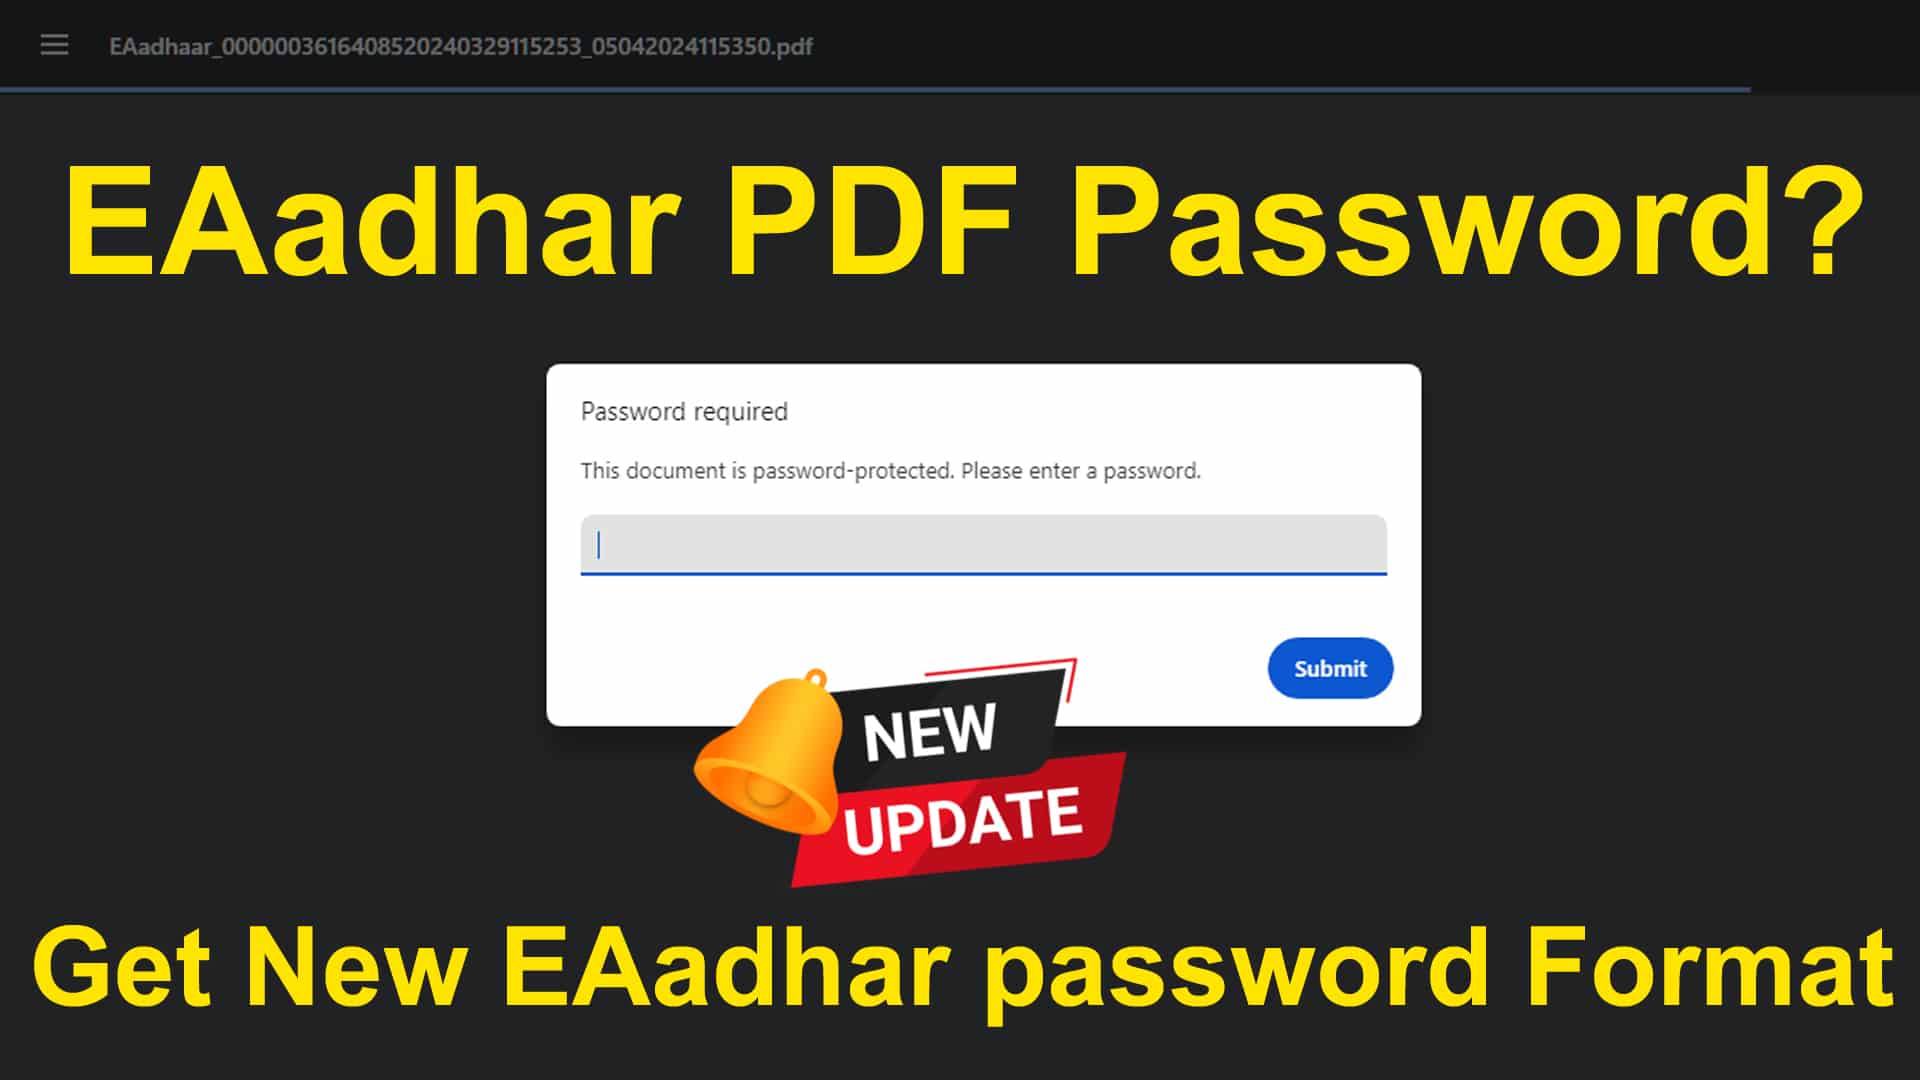 Eaadhar password format